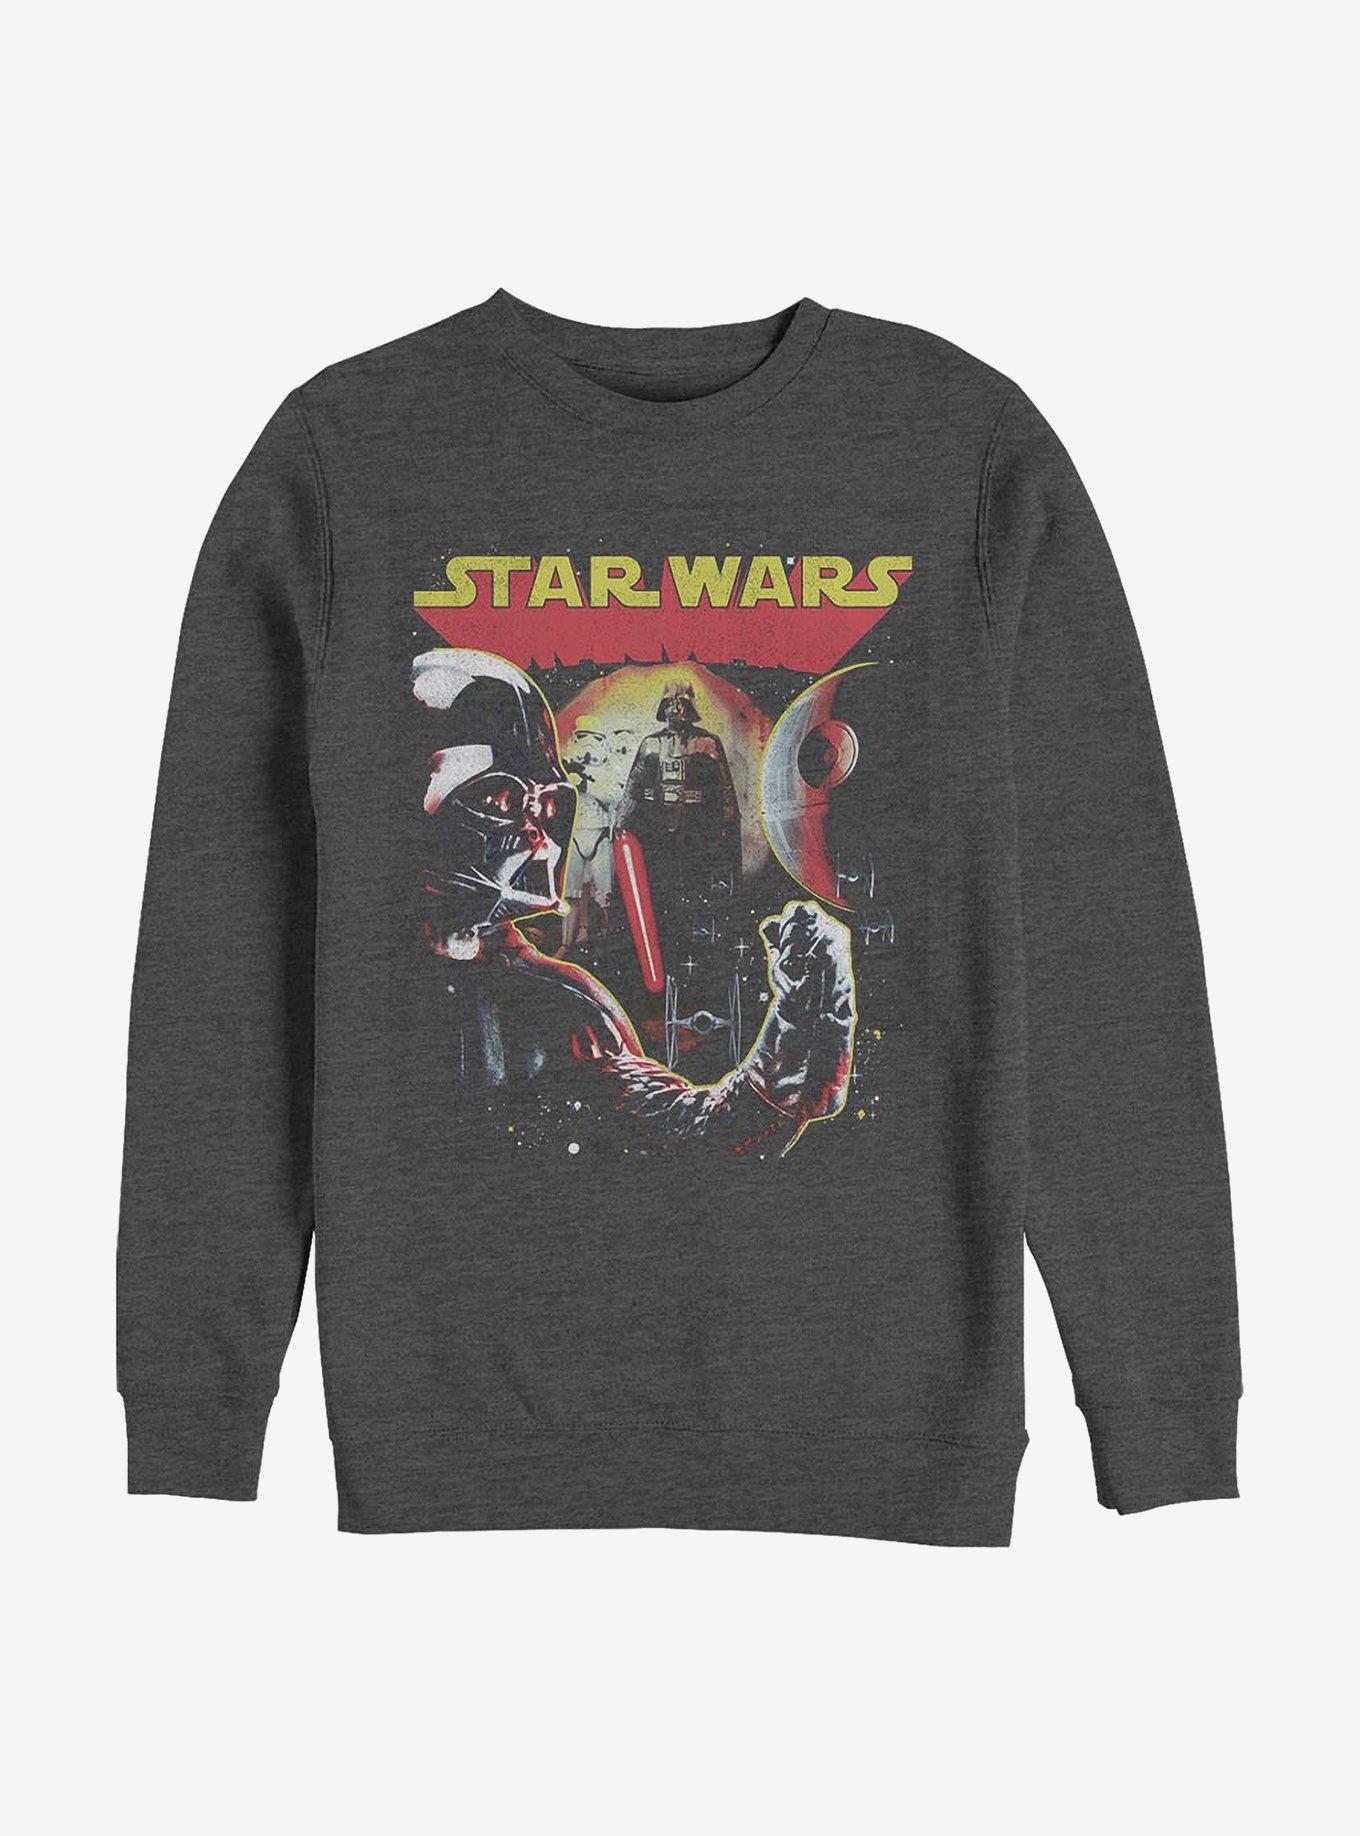 Star Wars Nasty Bunch Crew Sweatshirt, CHAR HTR, hi-res